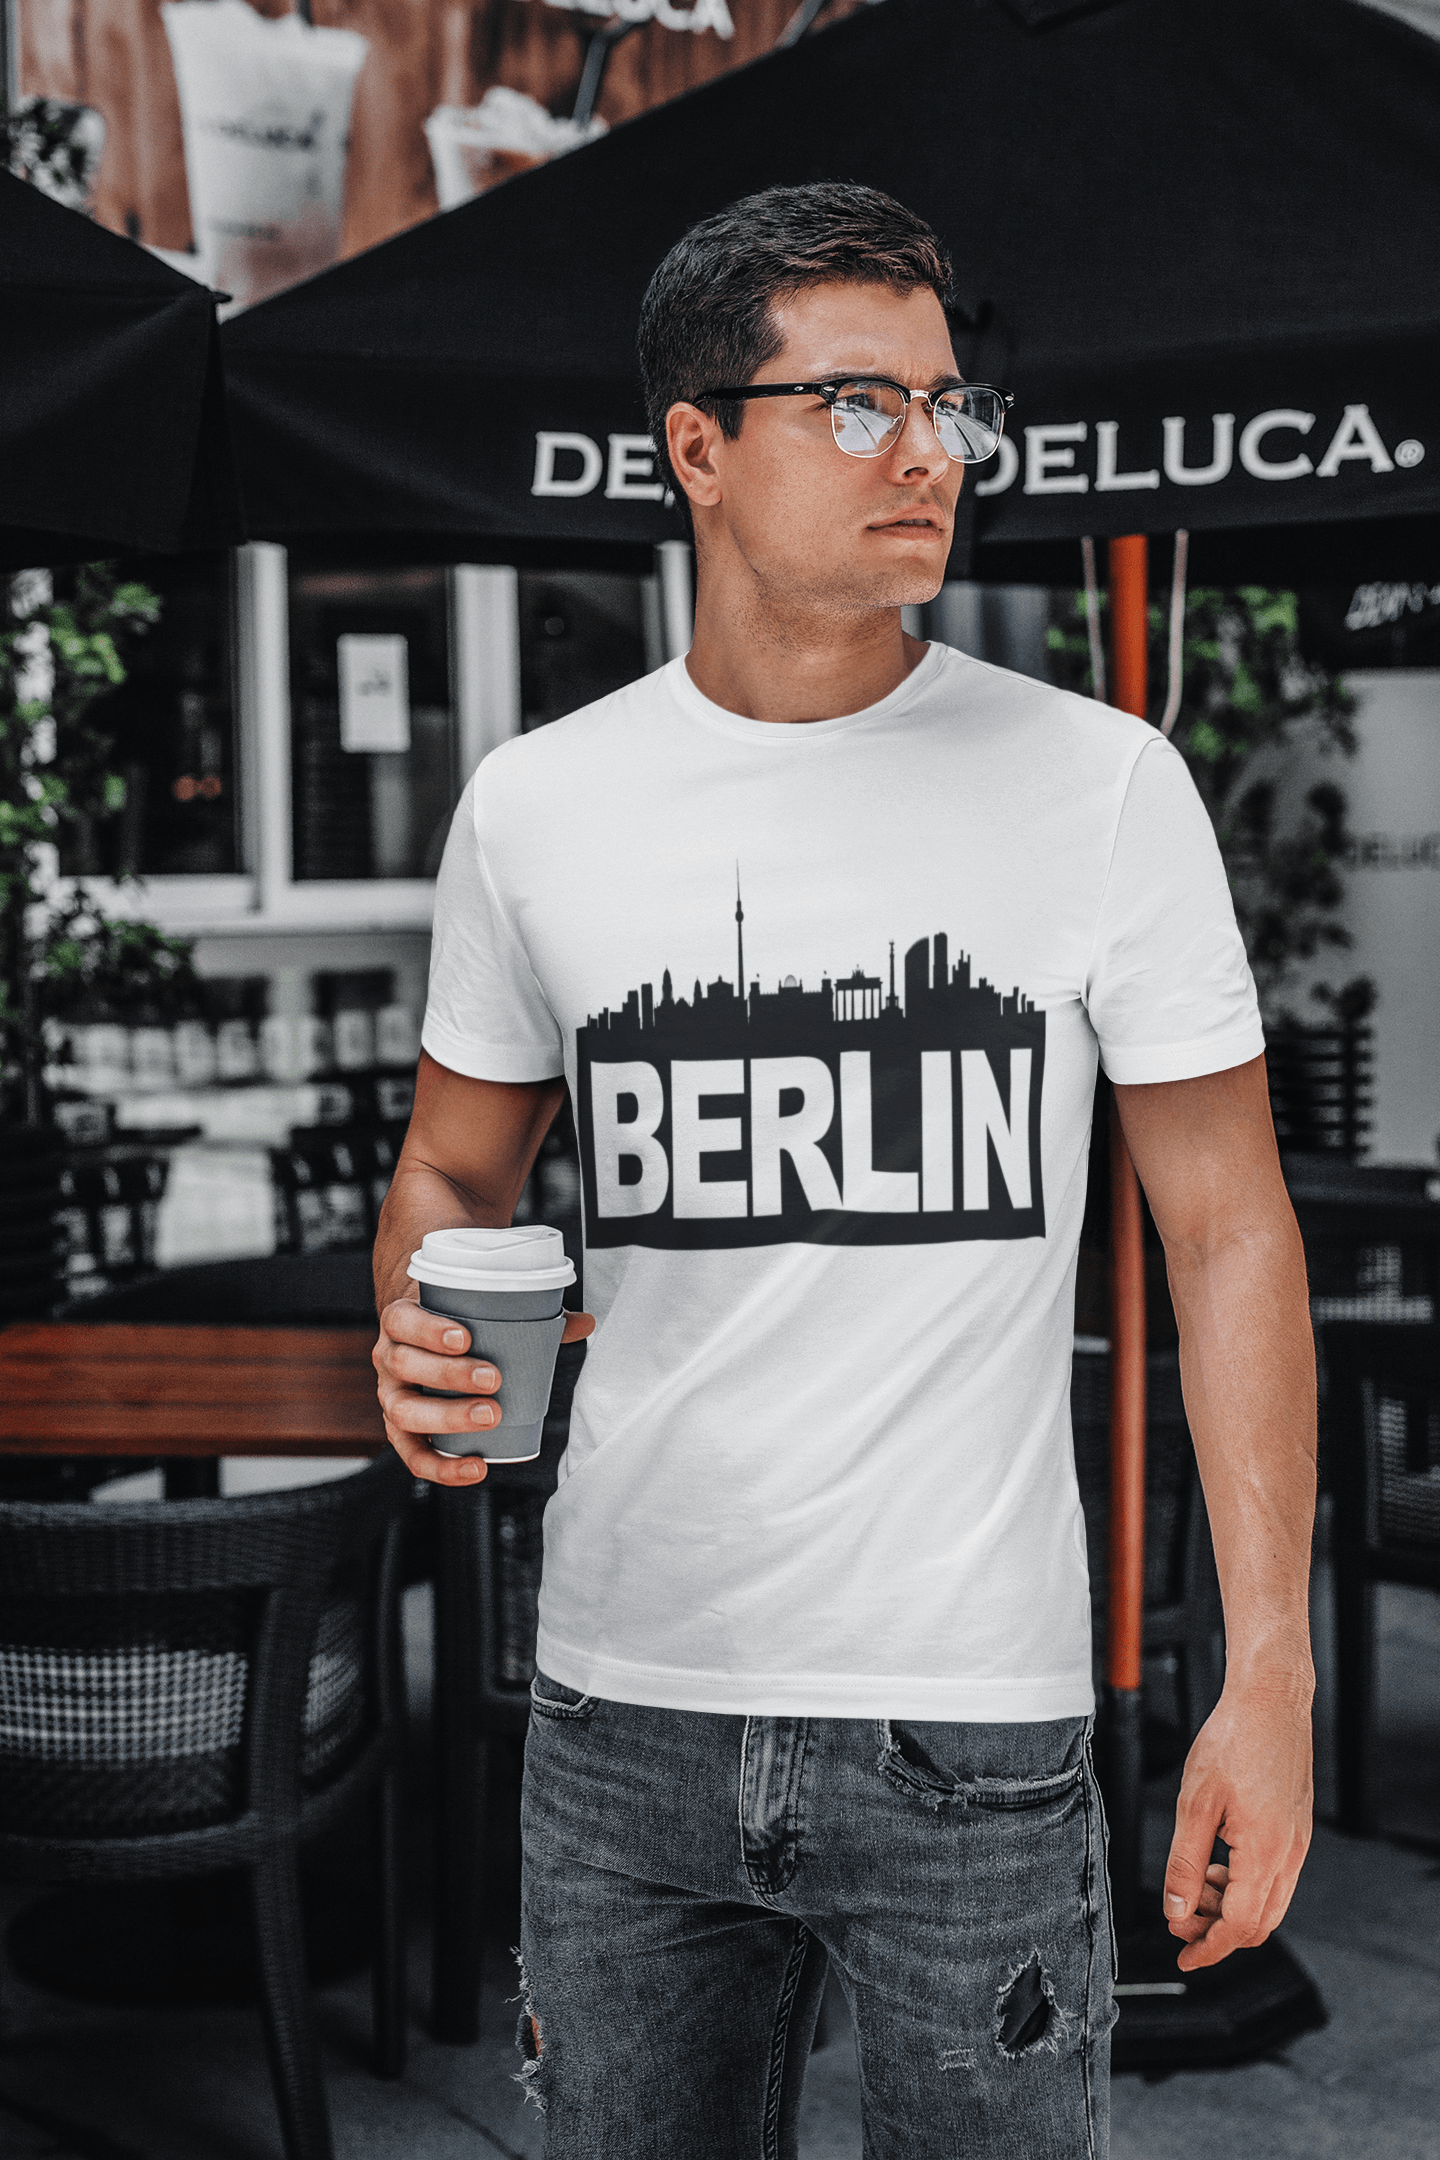 Berlin t shirts men, Short Sleeve T-Shirt, T Shirt, Cotton Tee Shirt for Men's 00182